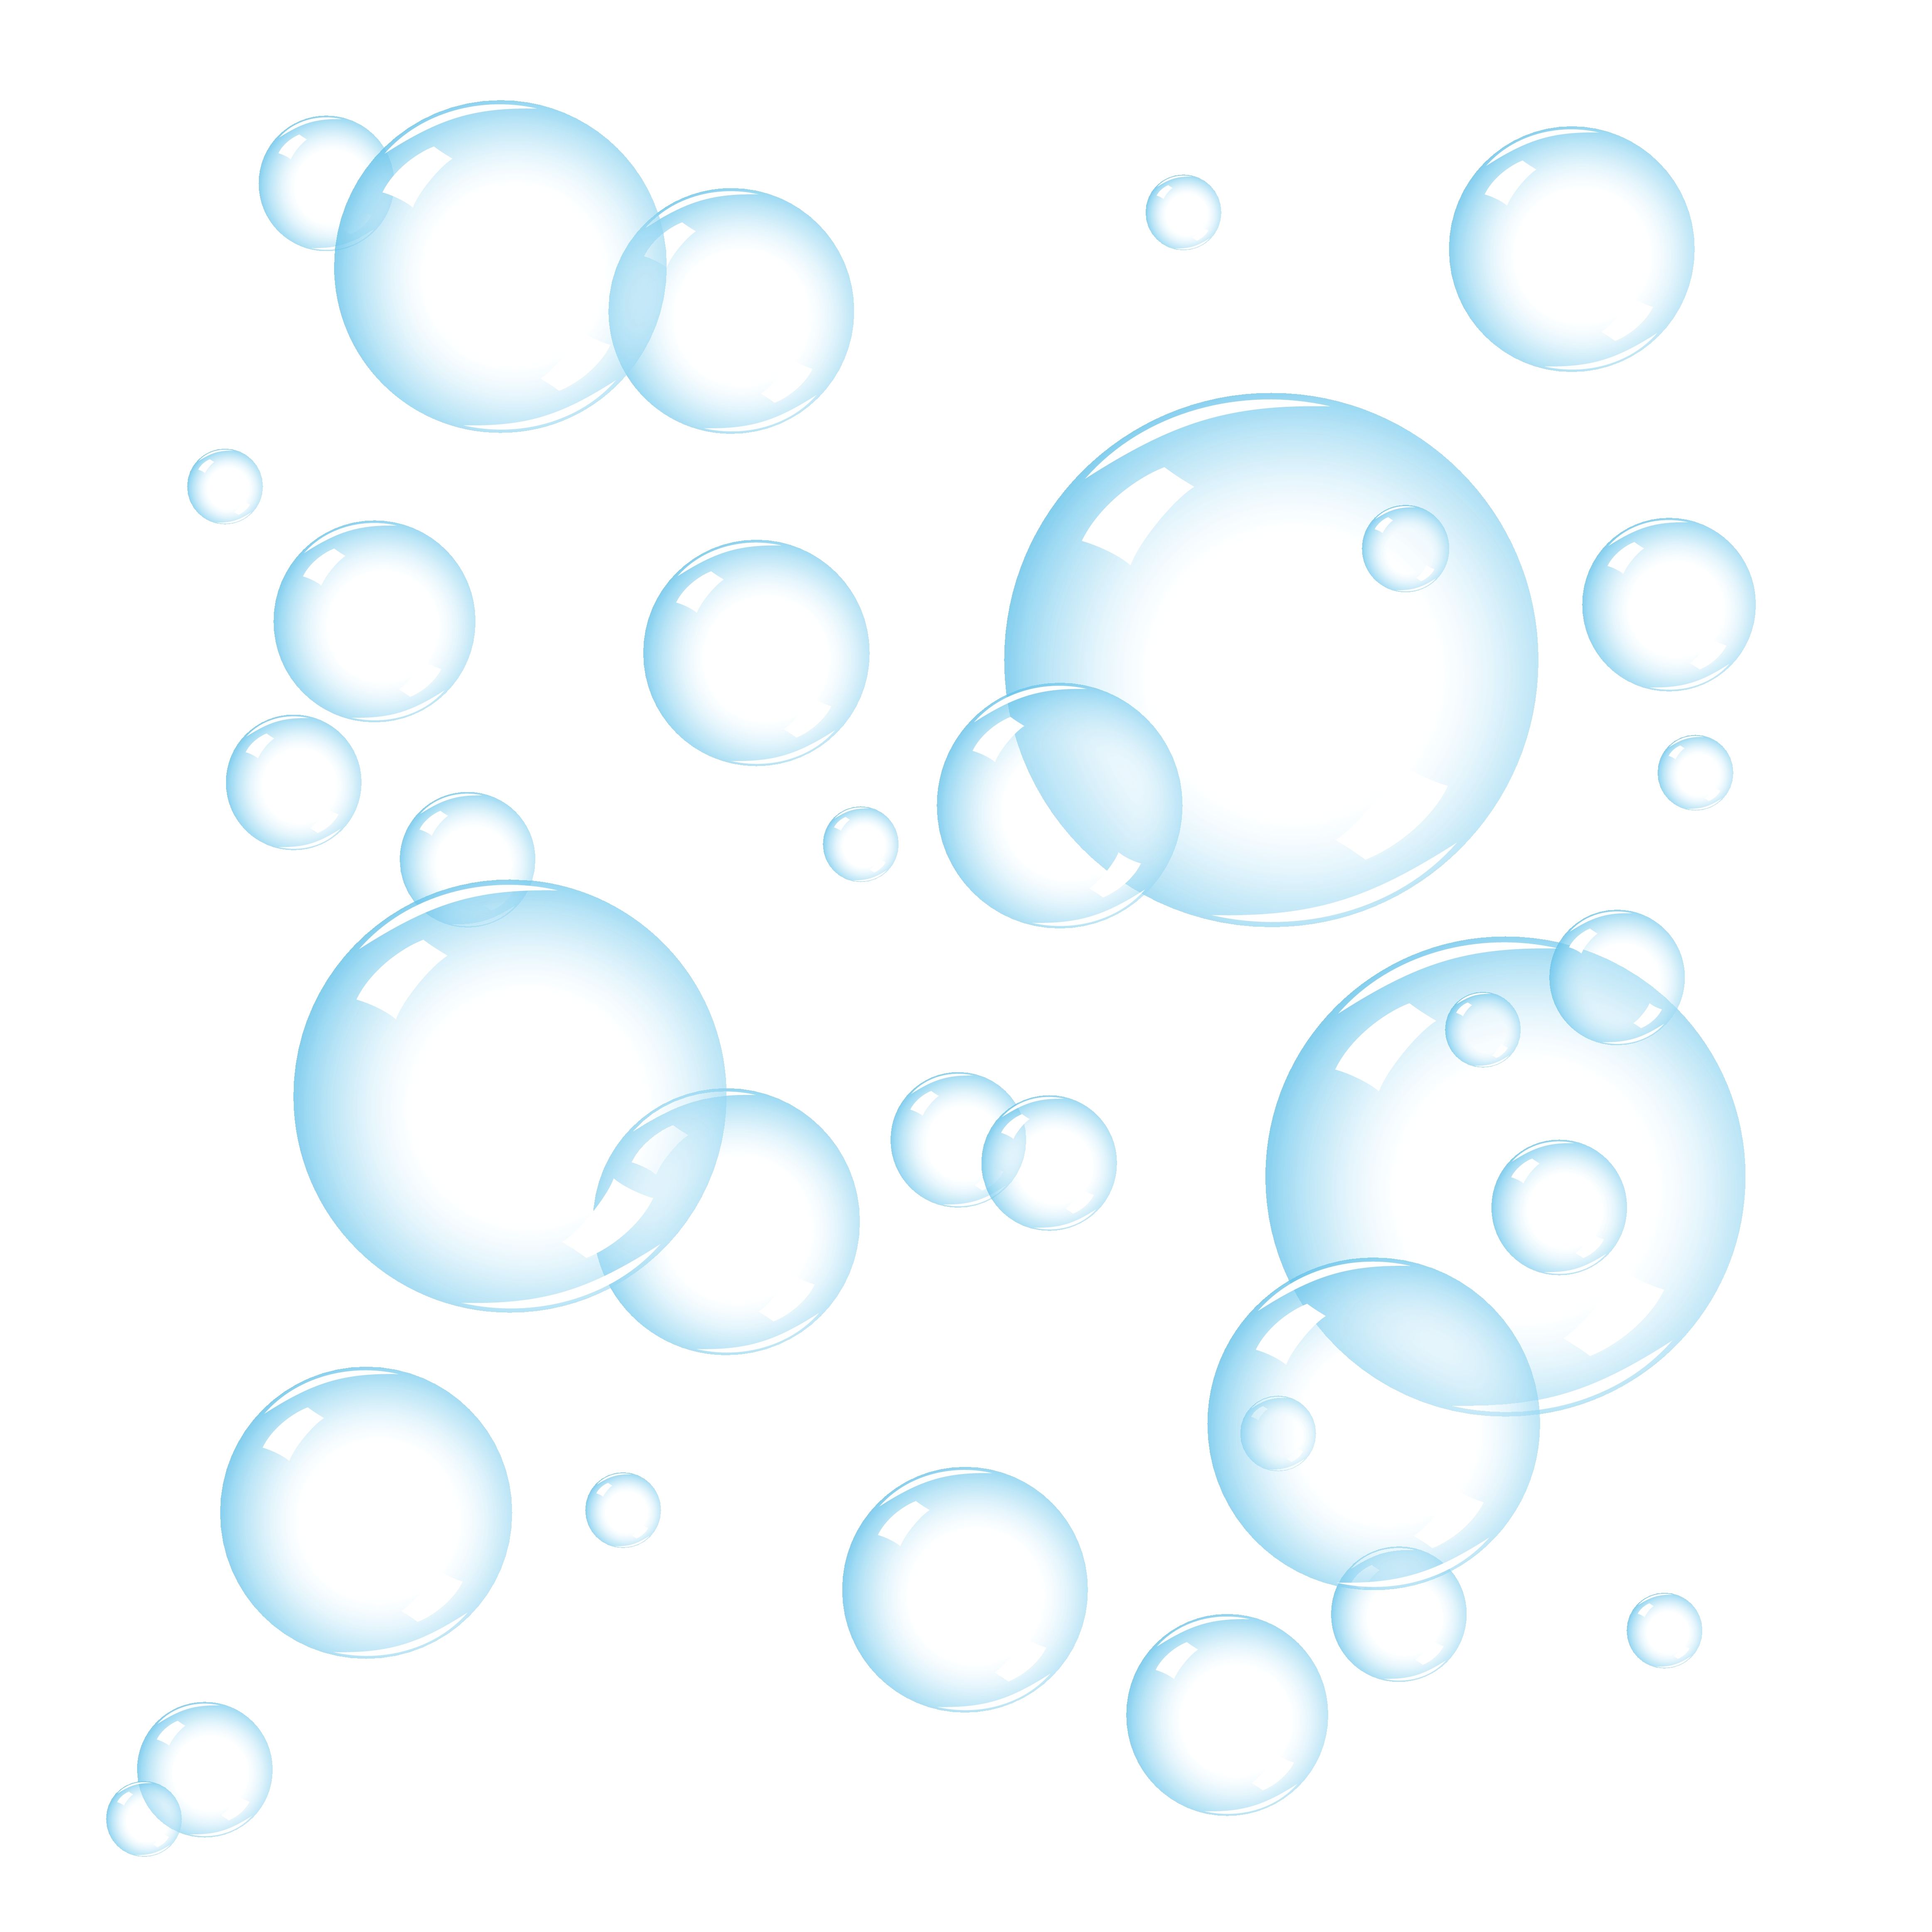 Bubble clipart. Bubbles clip art free